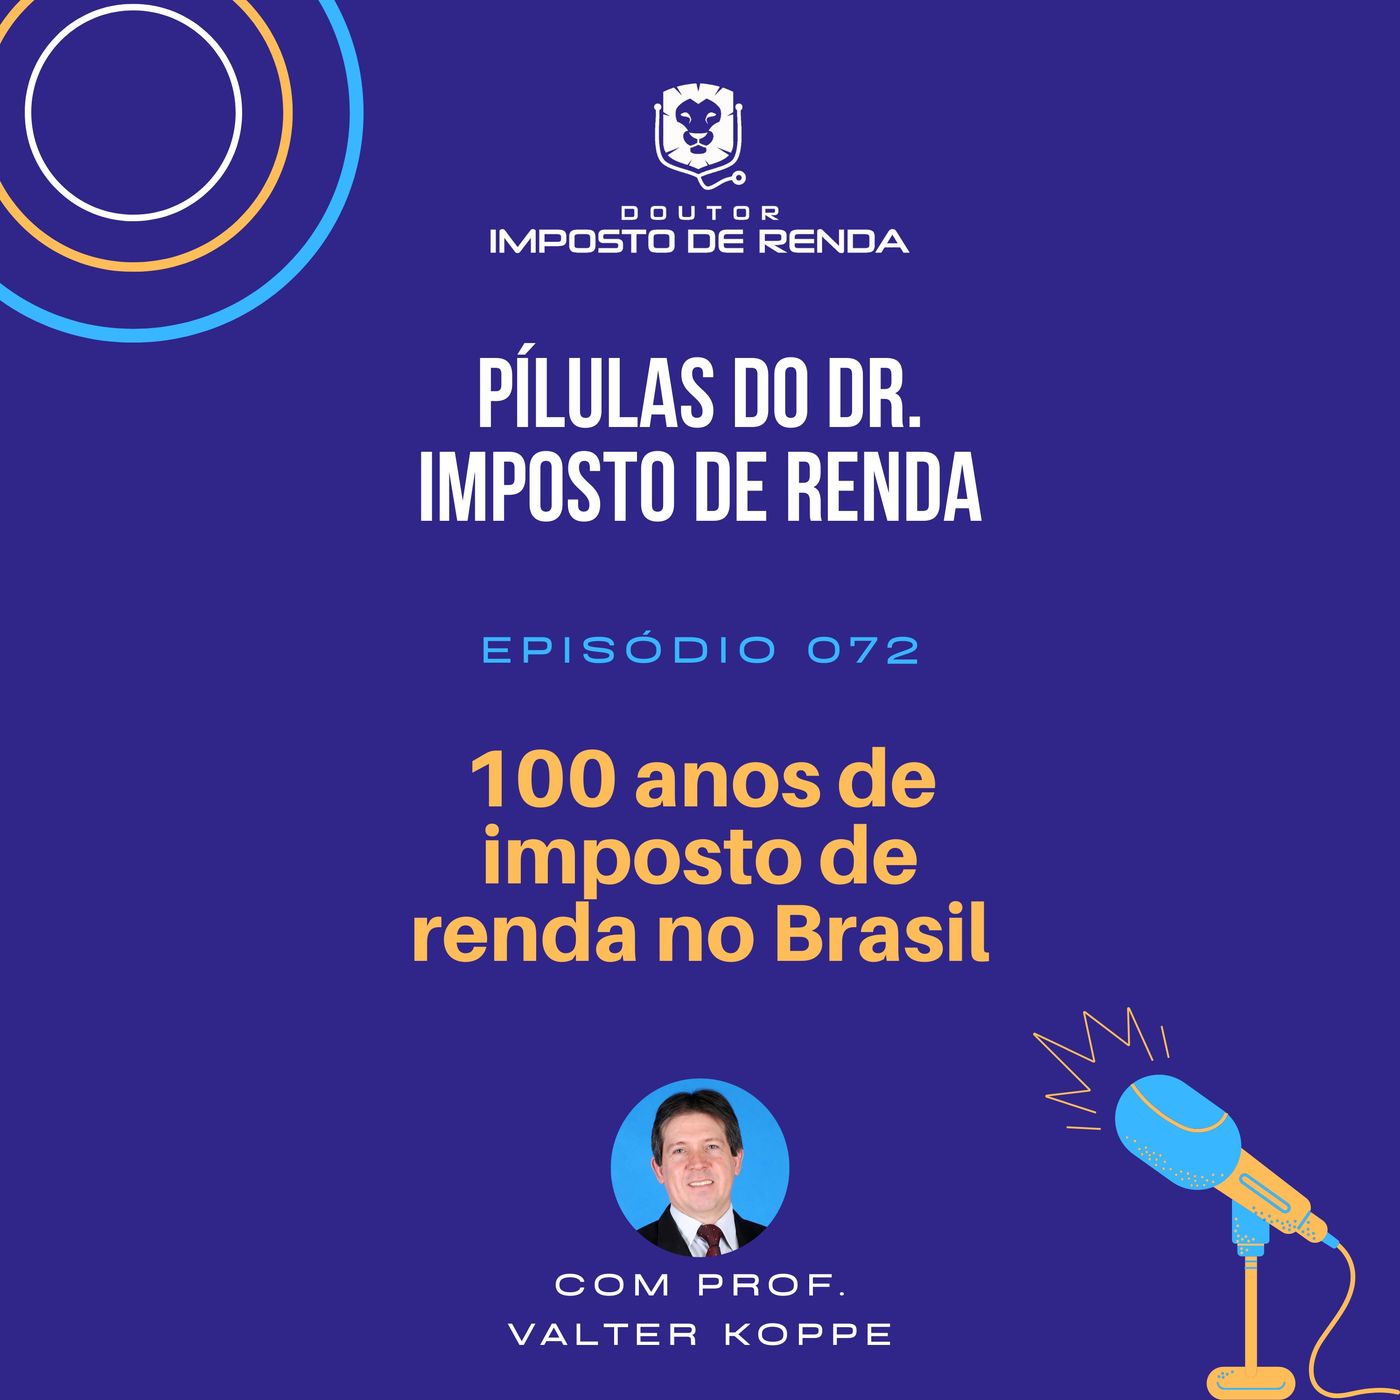 PDIR #072 – 100 anos de imposto de renda no Brasil